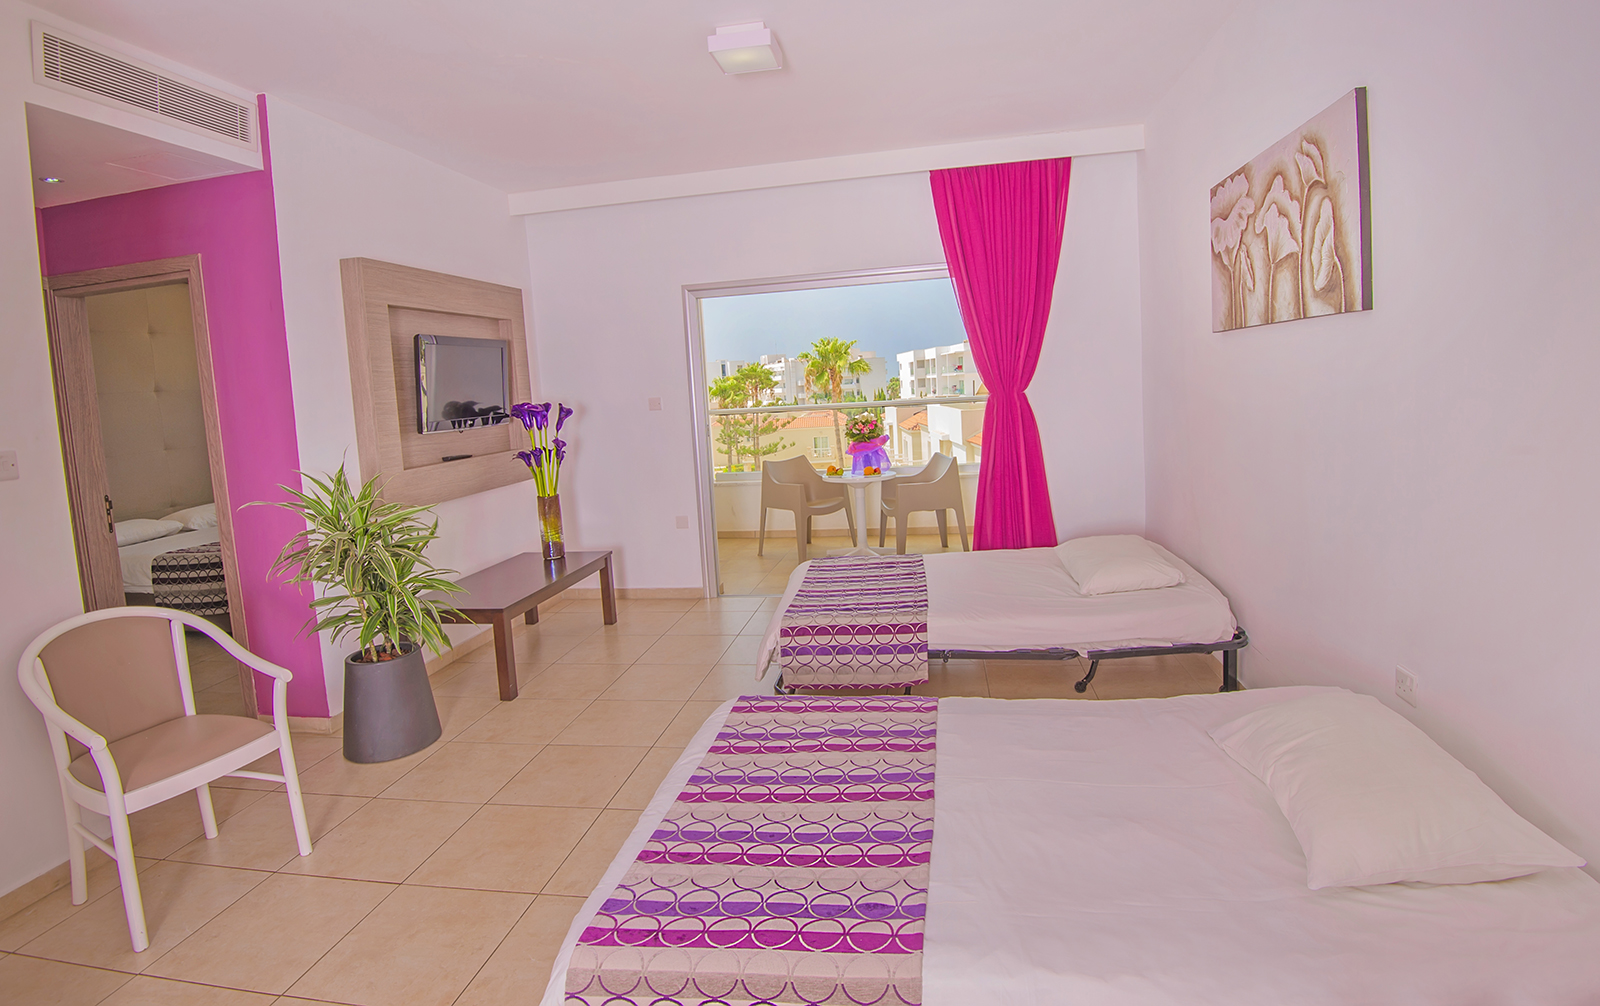 New Famagusta Hotel-Porodicna soba.jpg